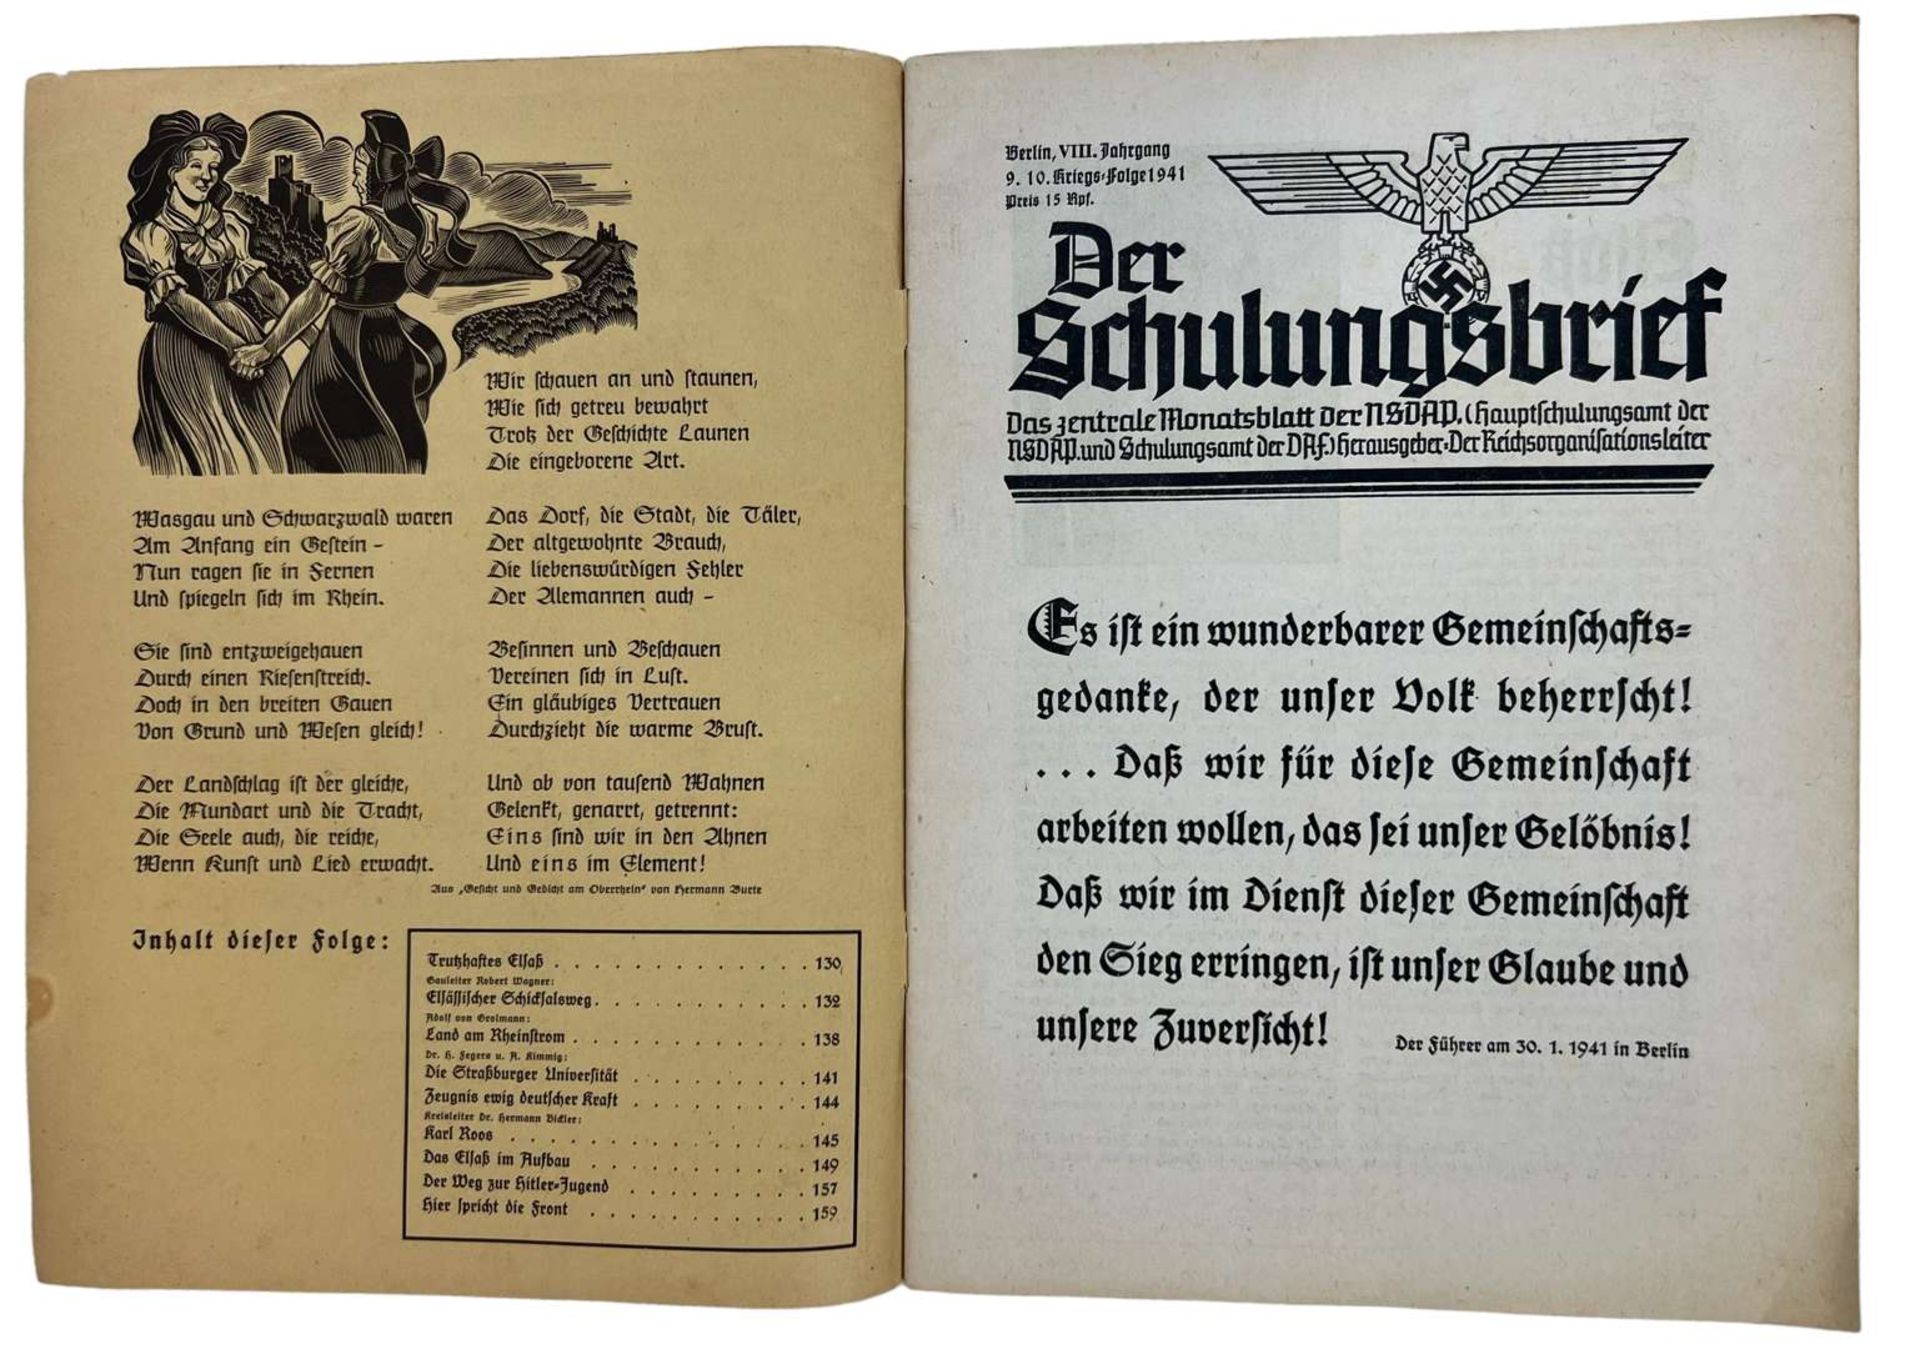 WW2 German NSDAP Newspaper "Der Schulungsbrief" 1941 - Image 2 of 3